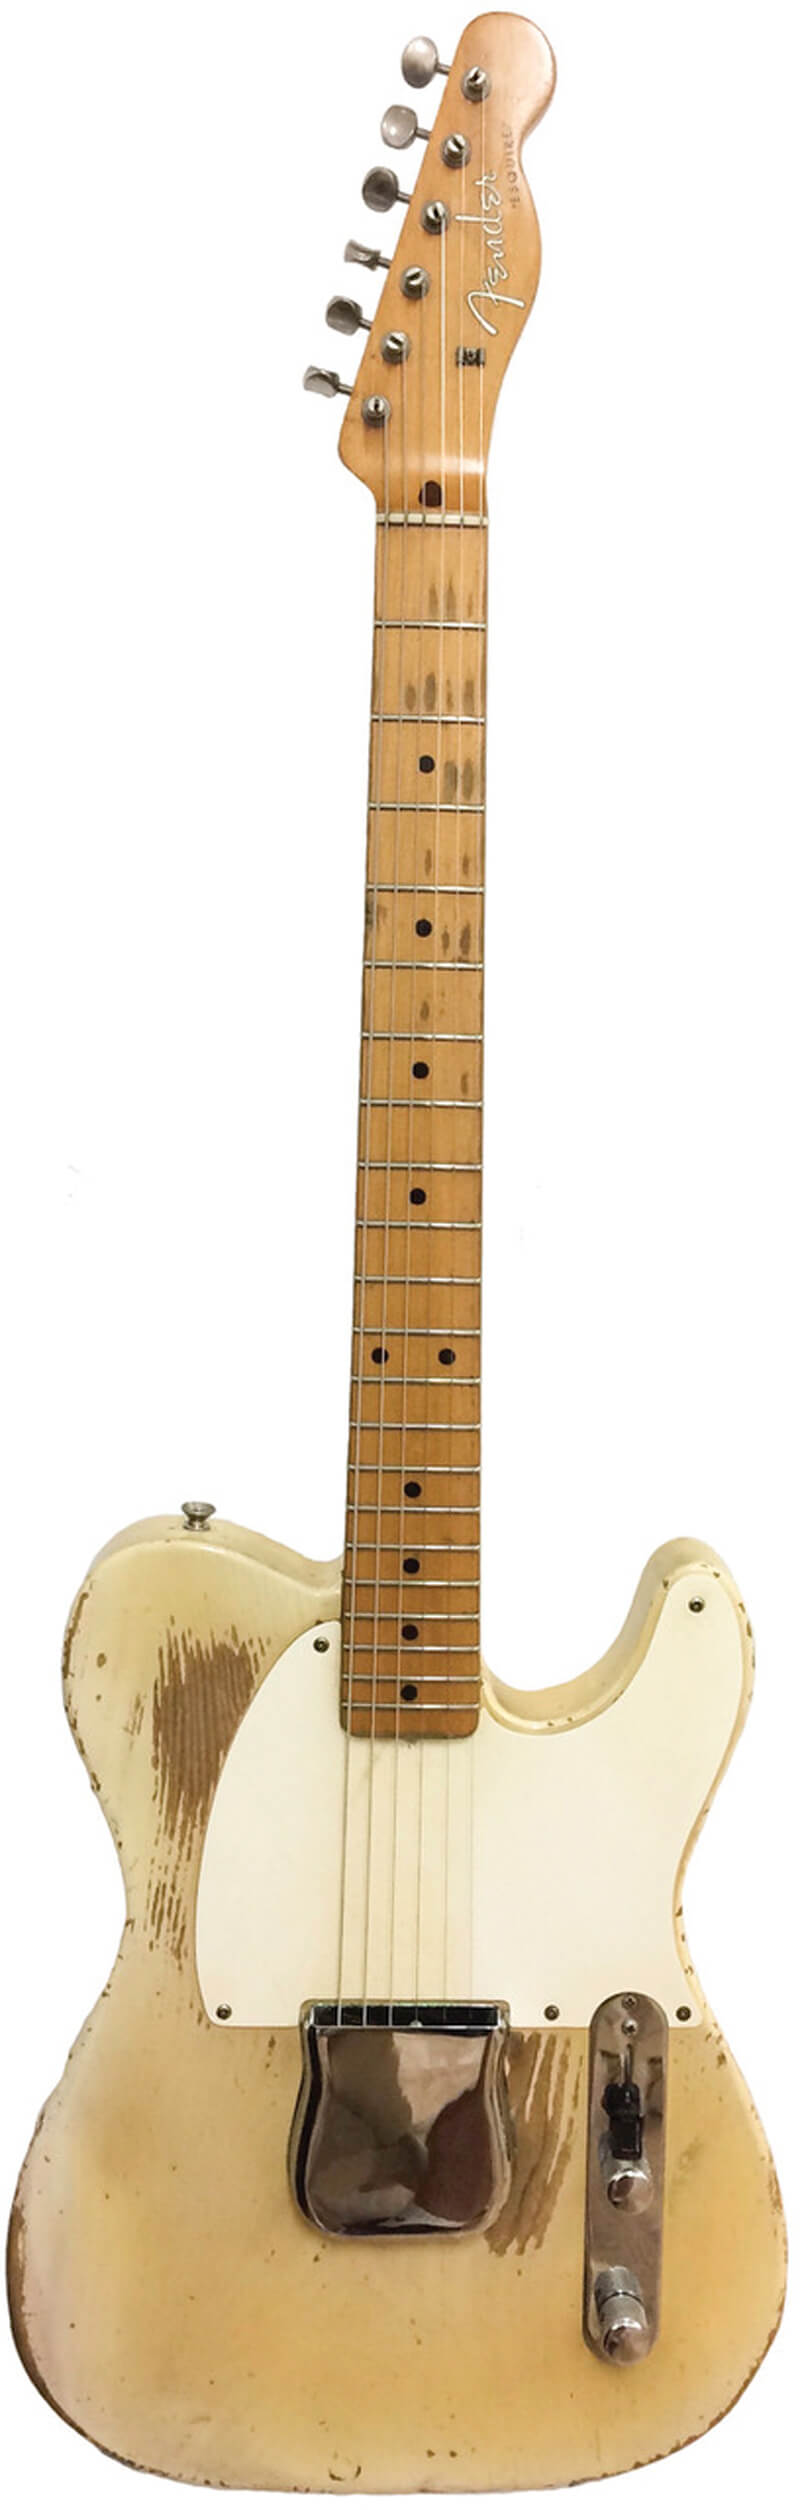 FLASHBACK: Vintage 1959 Fender Esquire